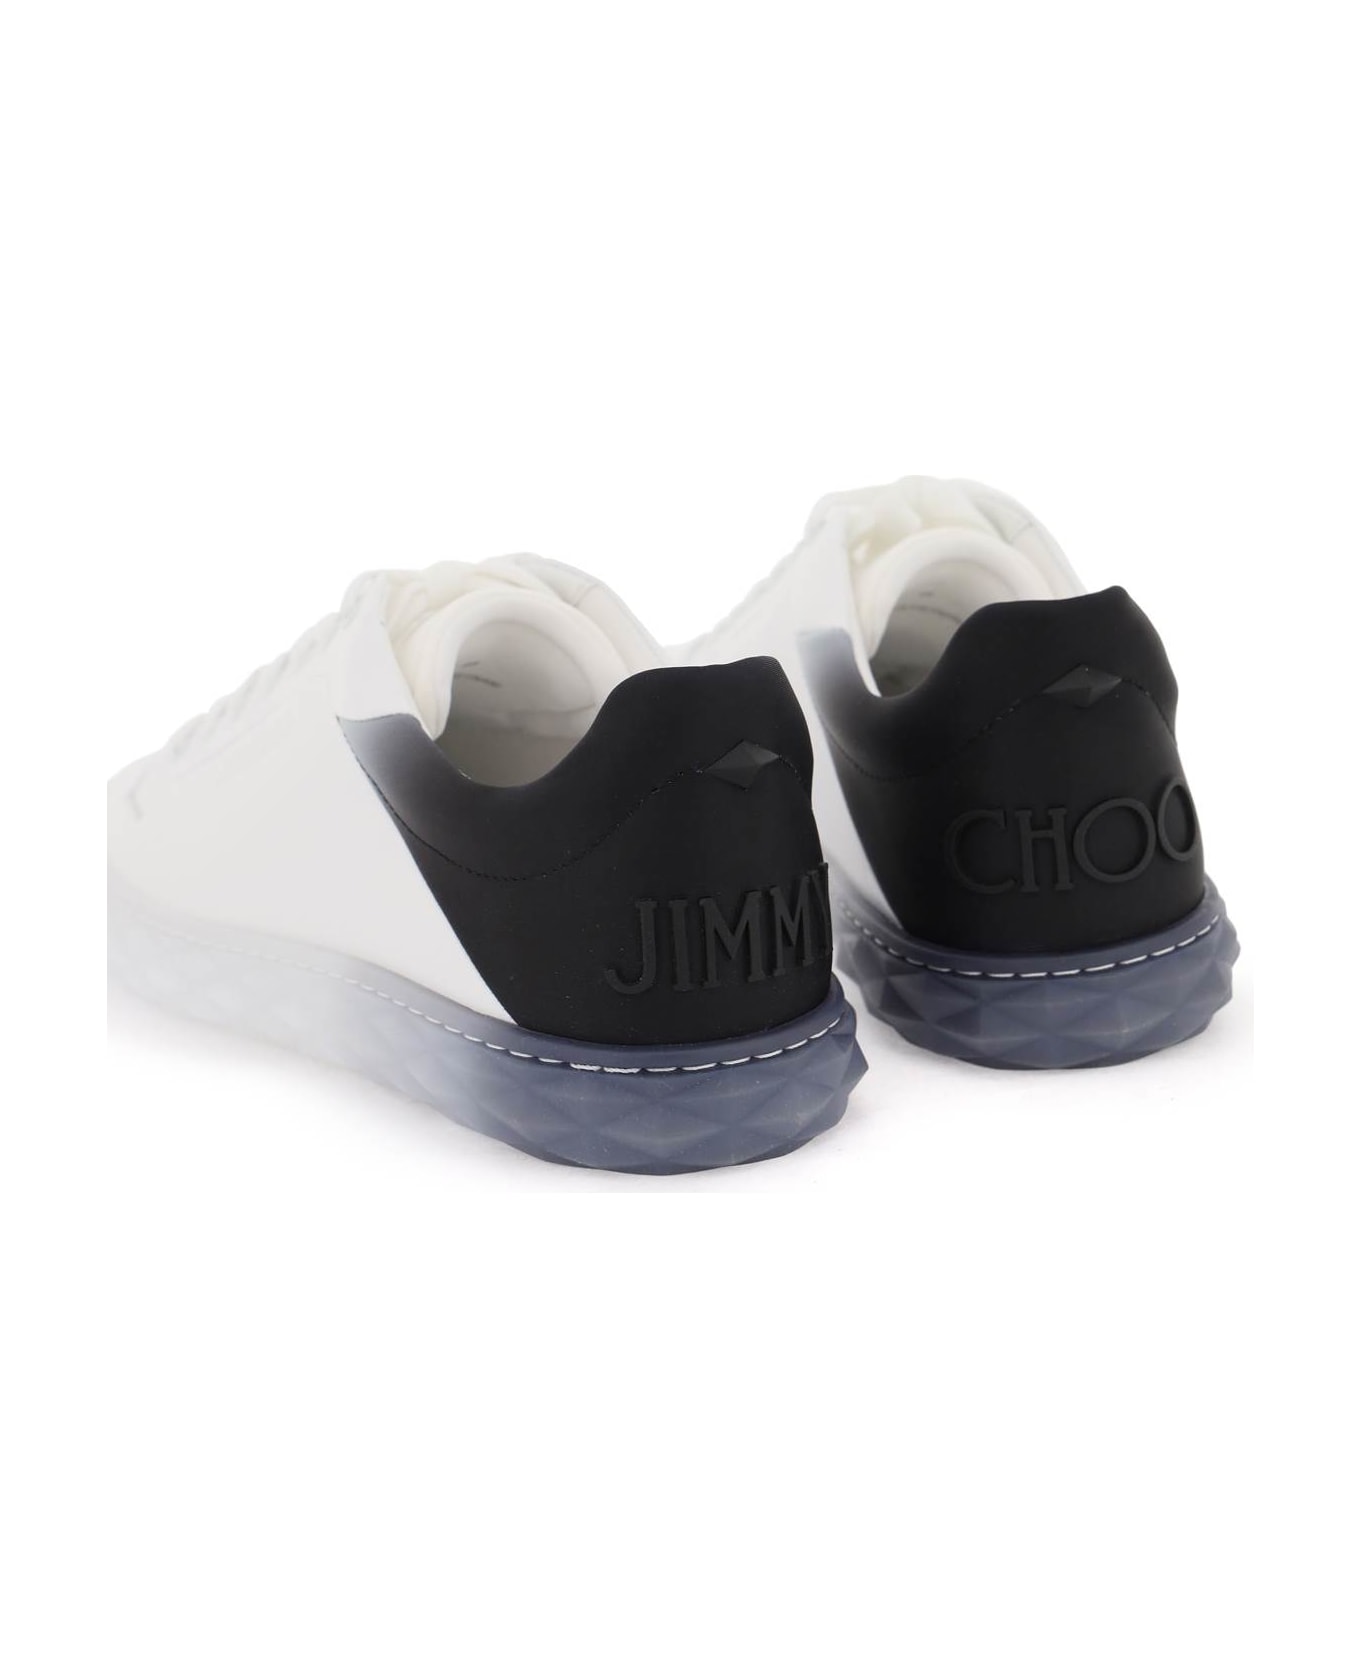 Jimmy Choo Diamond Light/m Ii Sneakers - V WHITE BLACK MIX (White) スニーカー